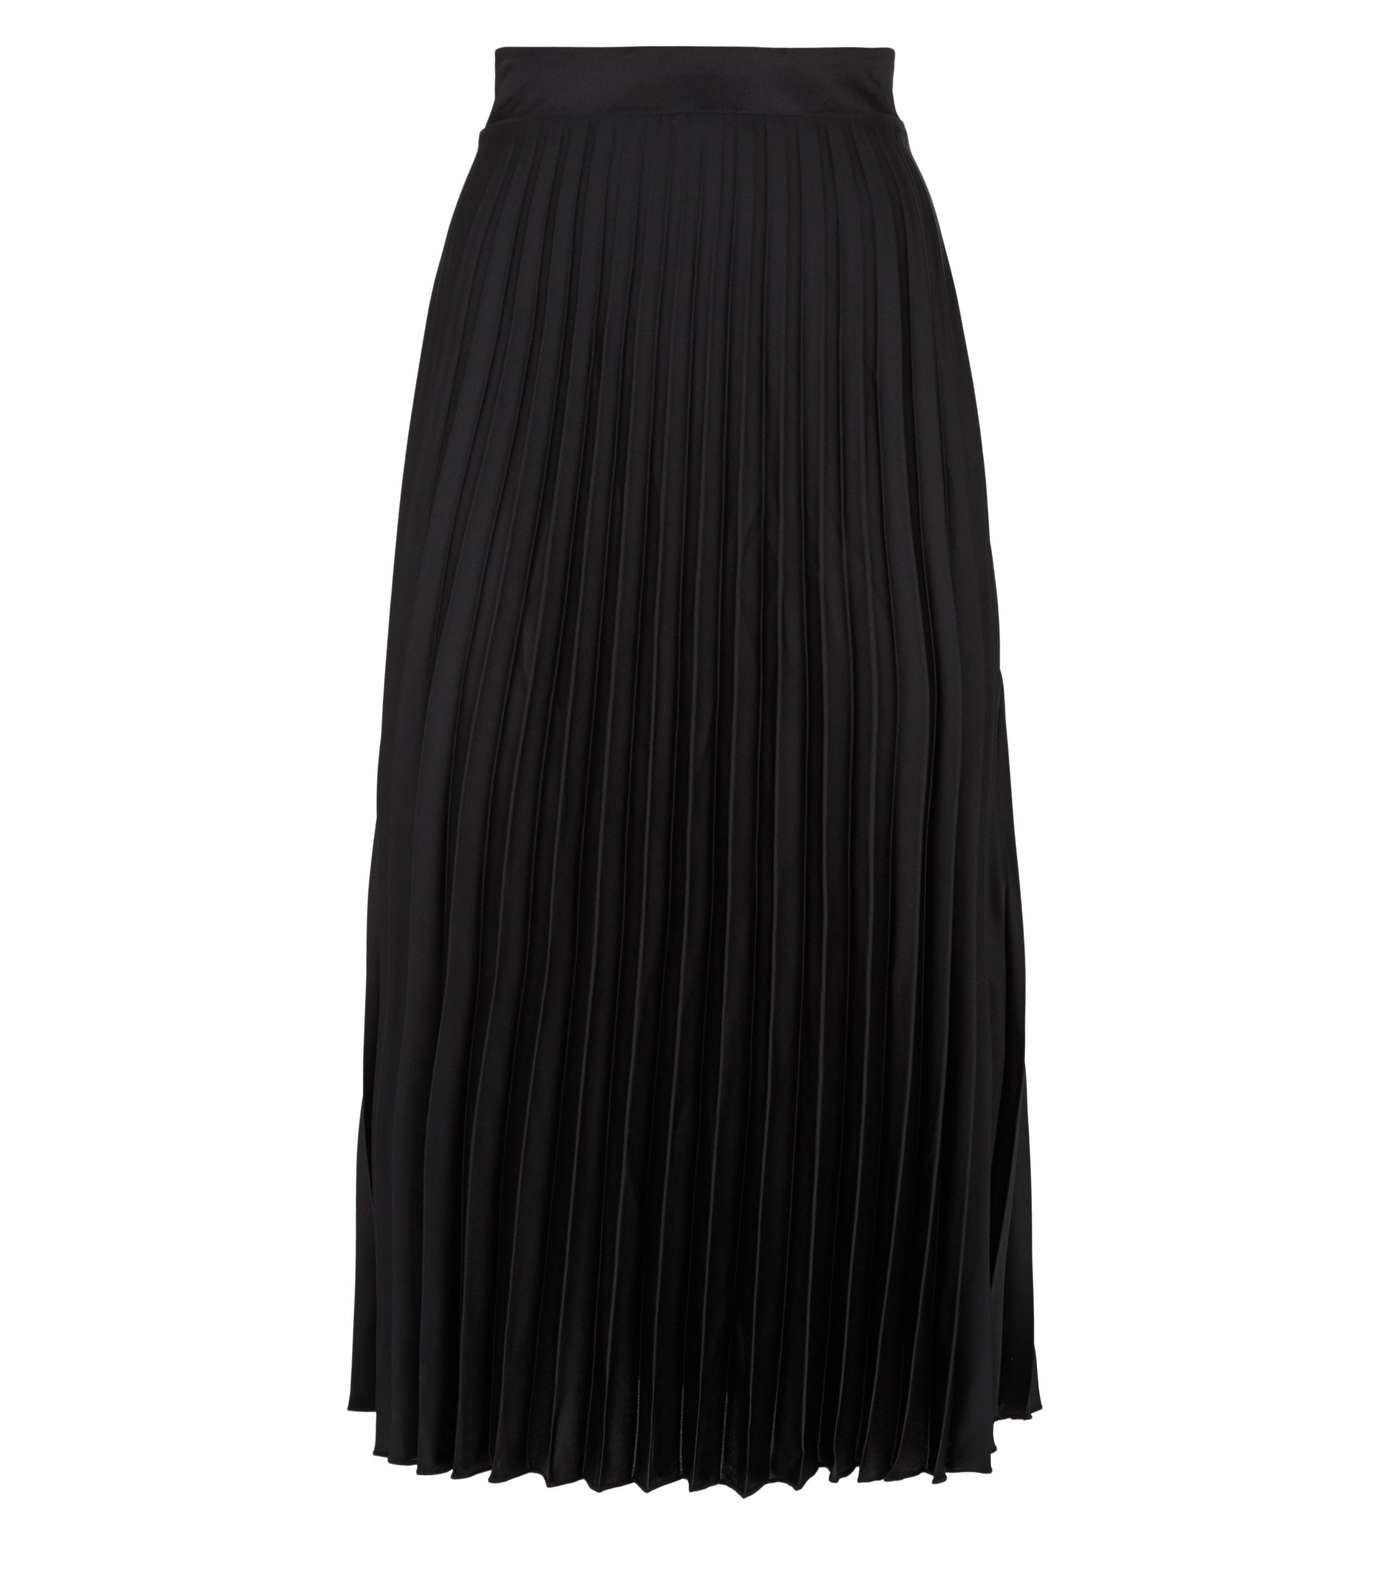 Petite Black Satin Pleated Midi Skirt Image 4